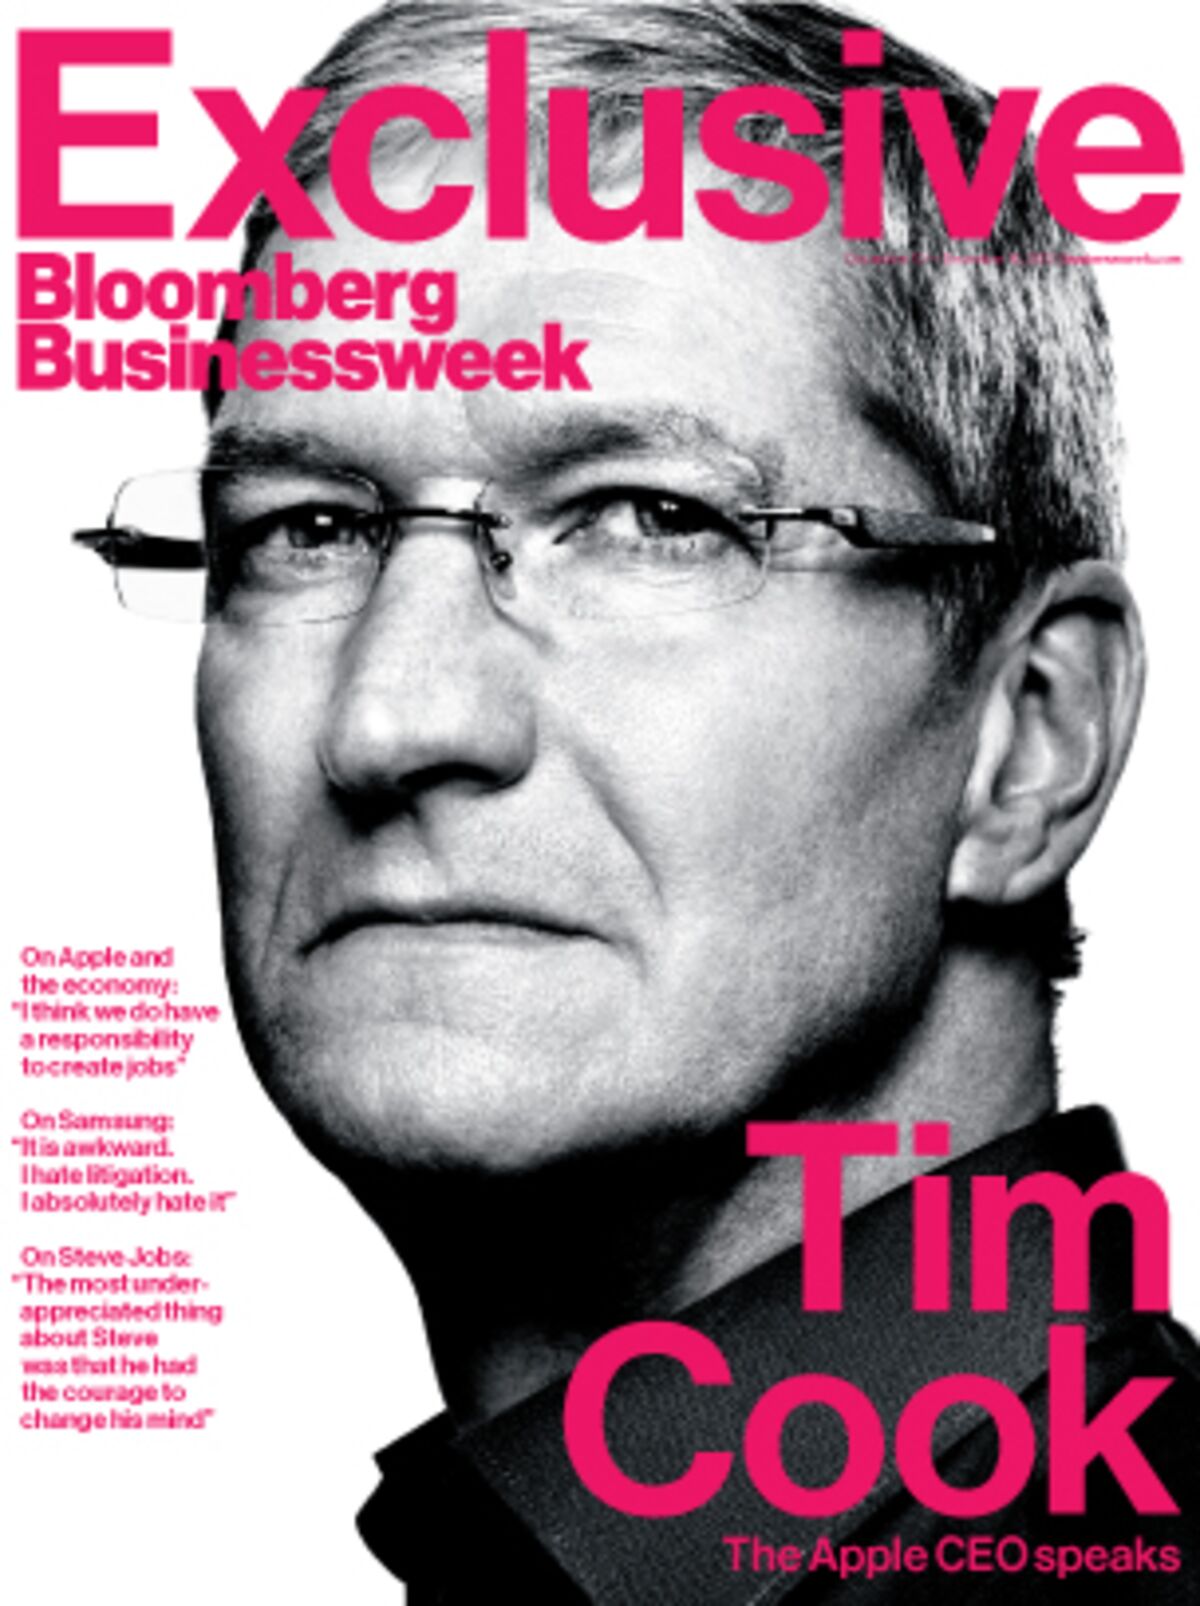 Năm đầu tiên của Tim Cook: Giám đốc điều hành Apple nói chuyện sẽ giúp người xem hiểu rõ hơn về vị trí quan trọng của Apple trong ngành kinh tế và những cách mà công ty đó tạo ra ảnh hưởng đến cuộc sống của chúng ta. Đó là một câu chuyện khiến bạn phải suy nghĩ.